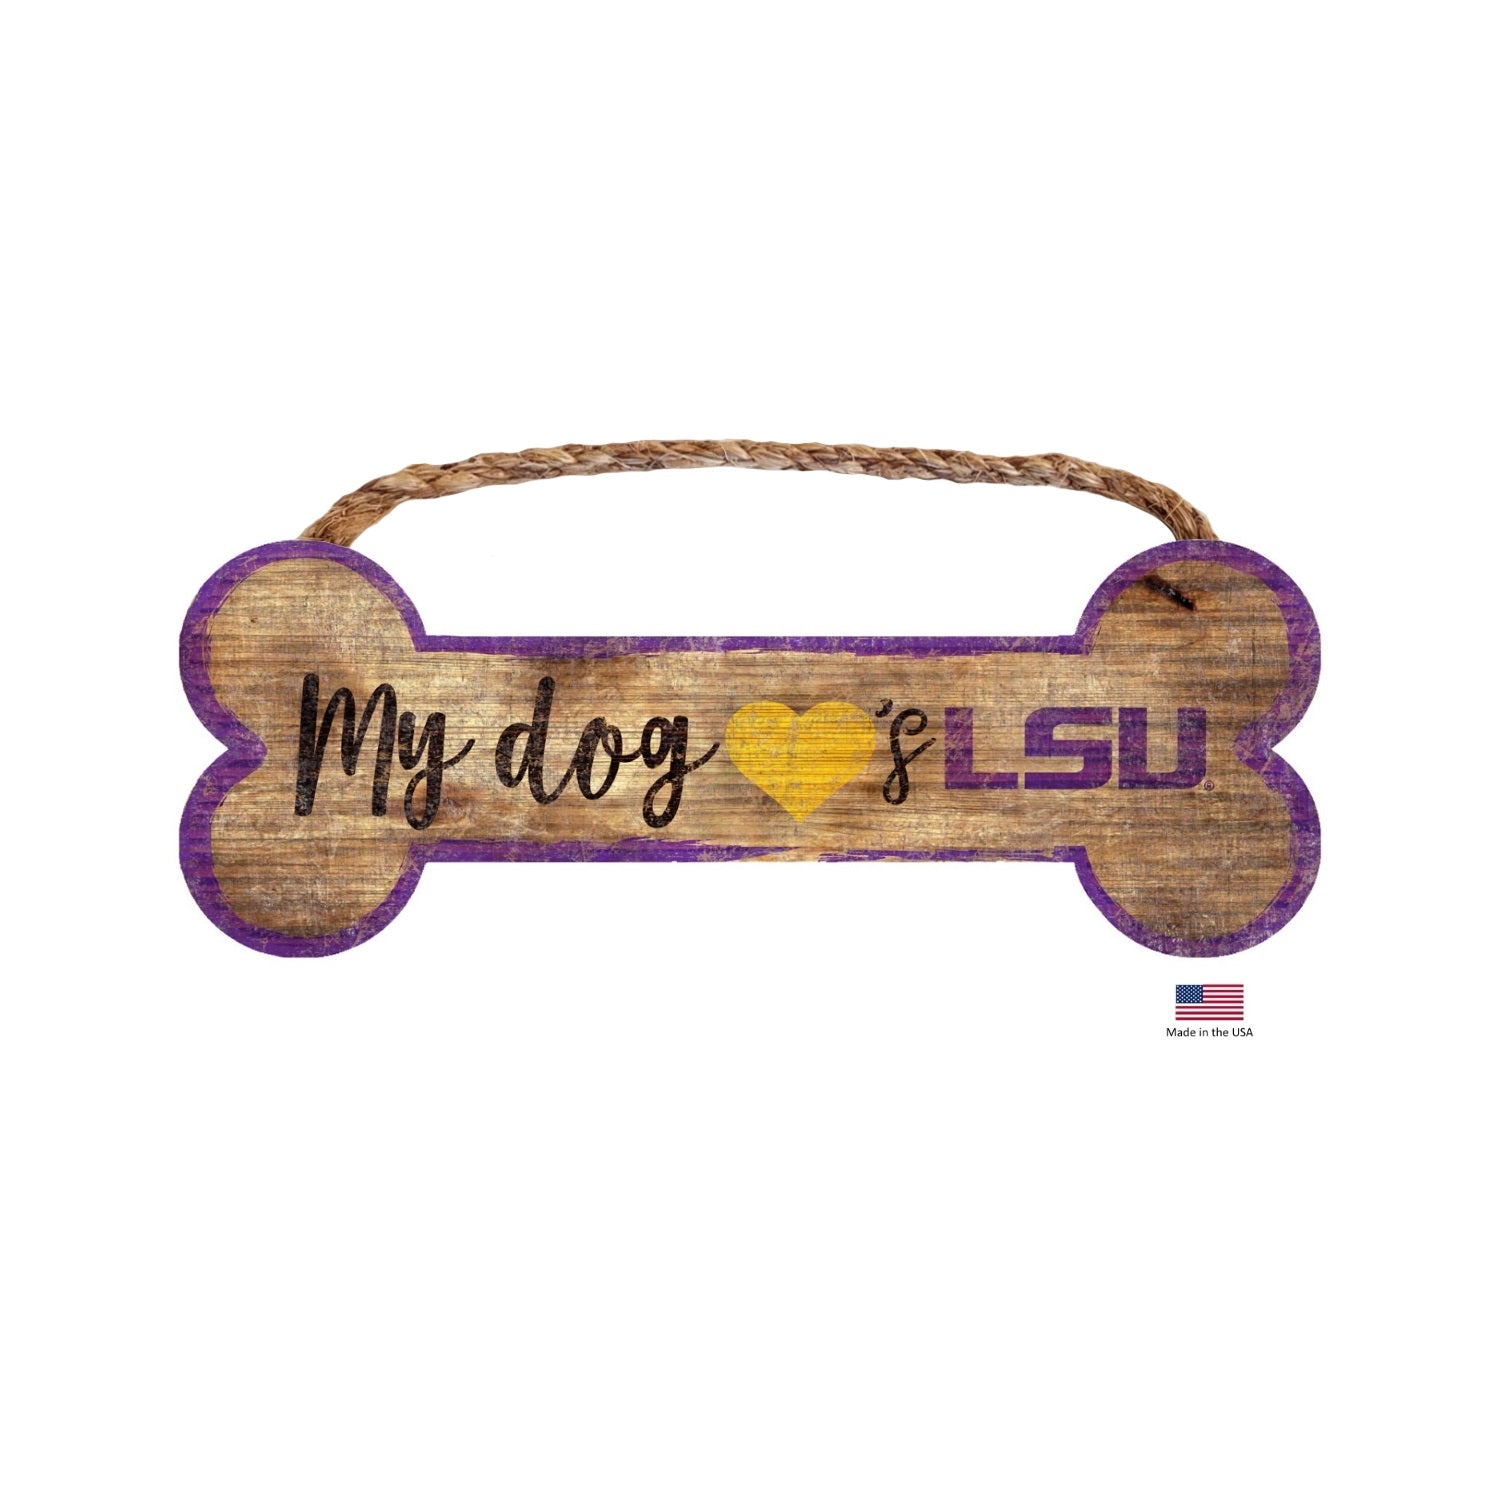 LSU Tigers Distressed Dog Bone Wooden Sign - staygoldendoodle.com